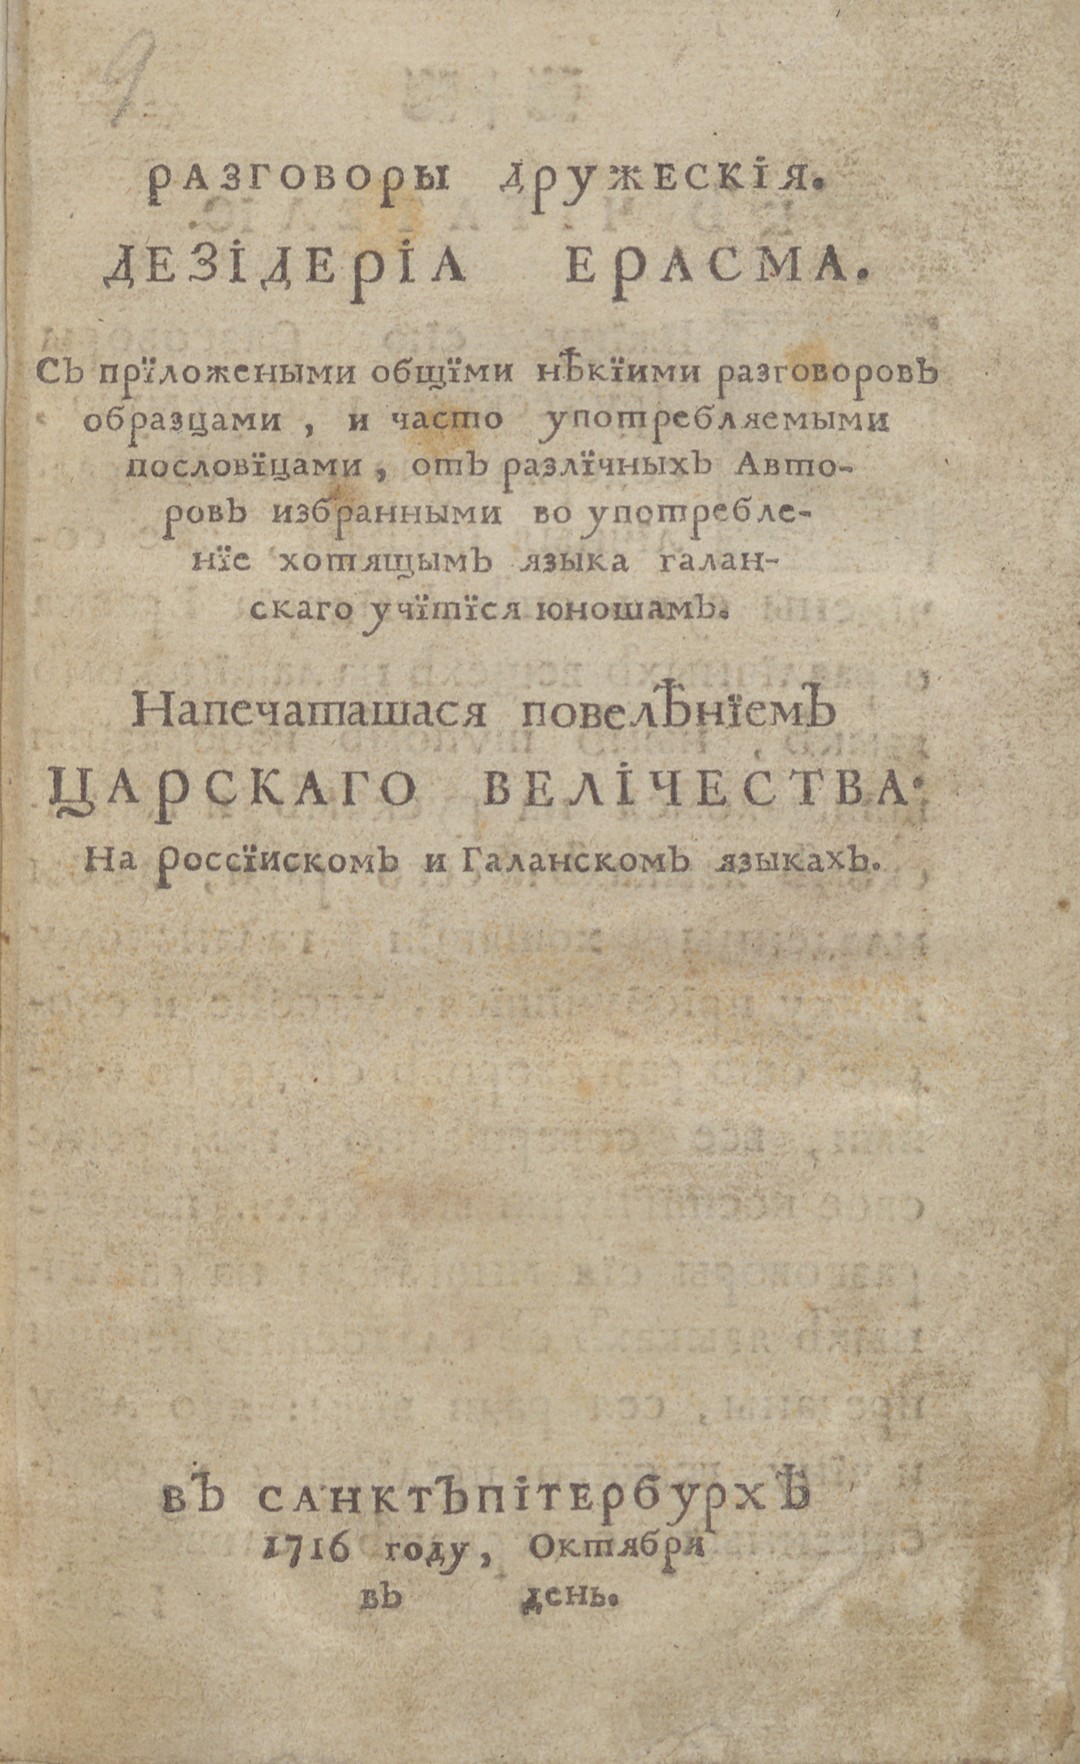 Титульный лист книги Э. Роттердамского «Разговоры дружеския» 1716 г.